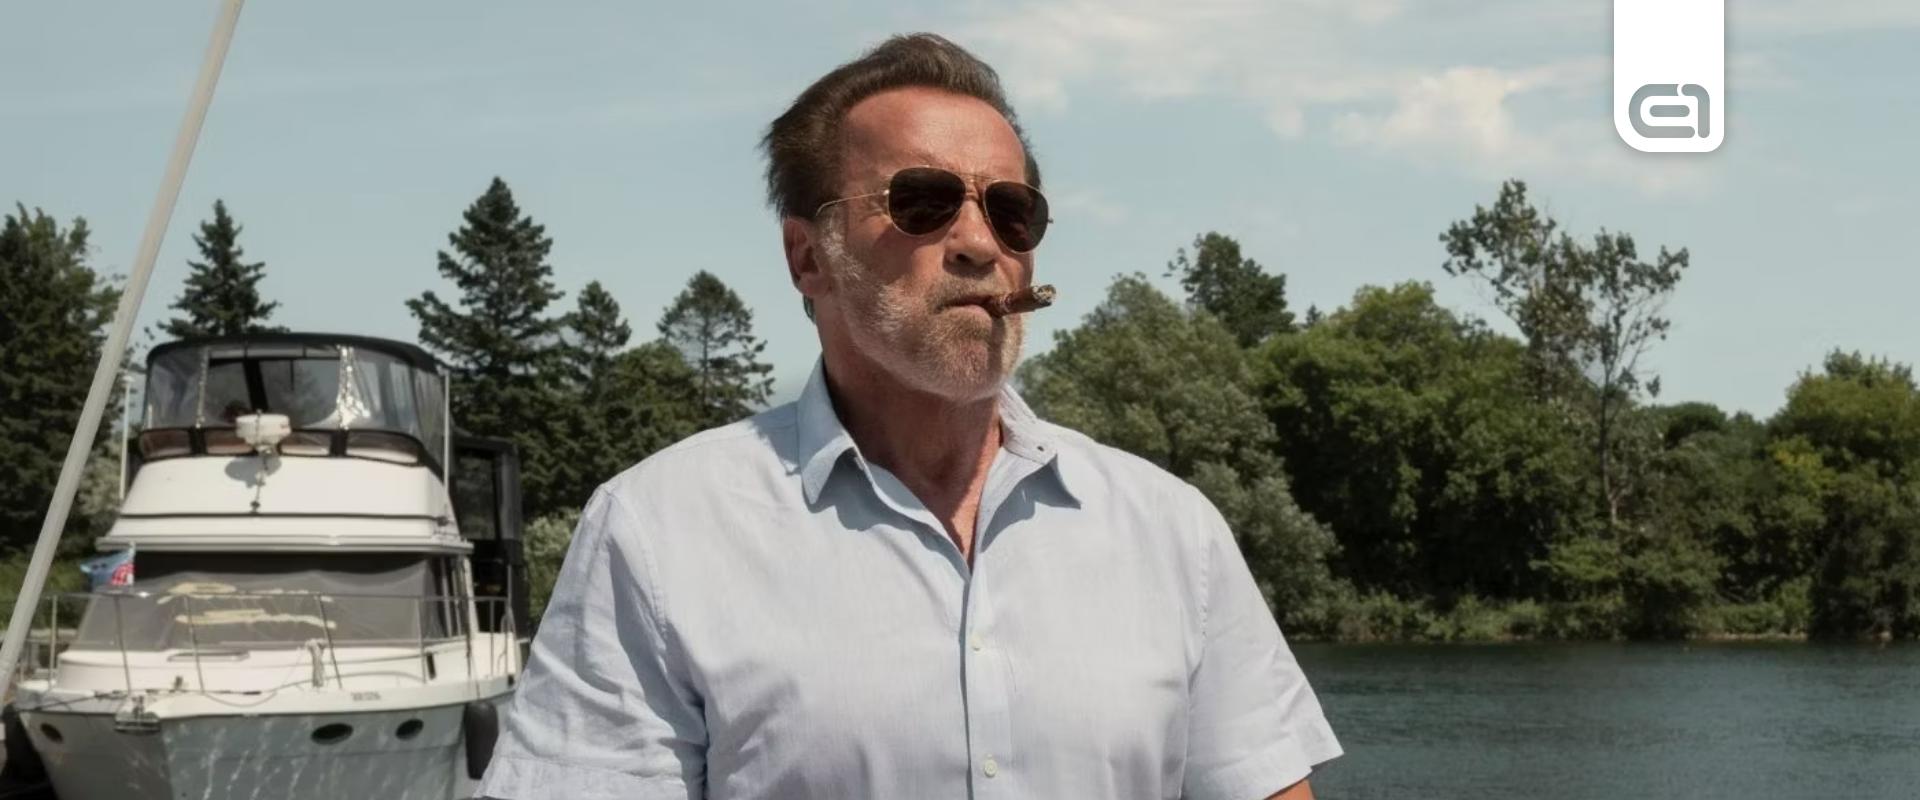 Új sorozatában az ökle mellett a humorával is pusztít Schwarzenegger